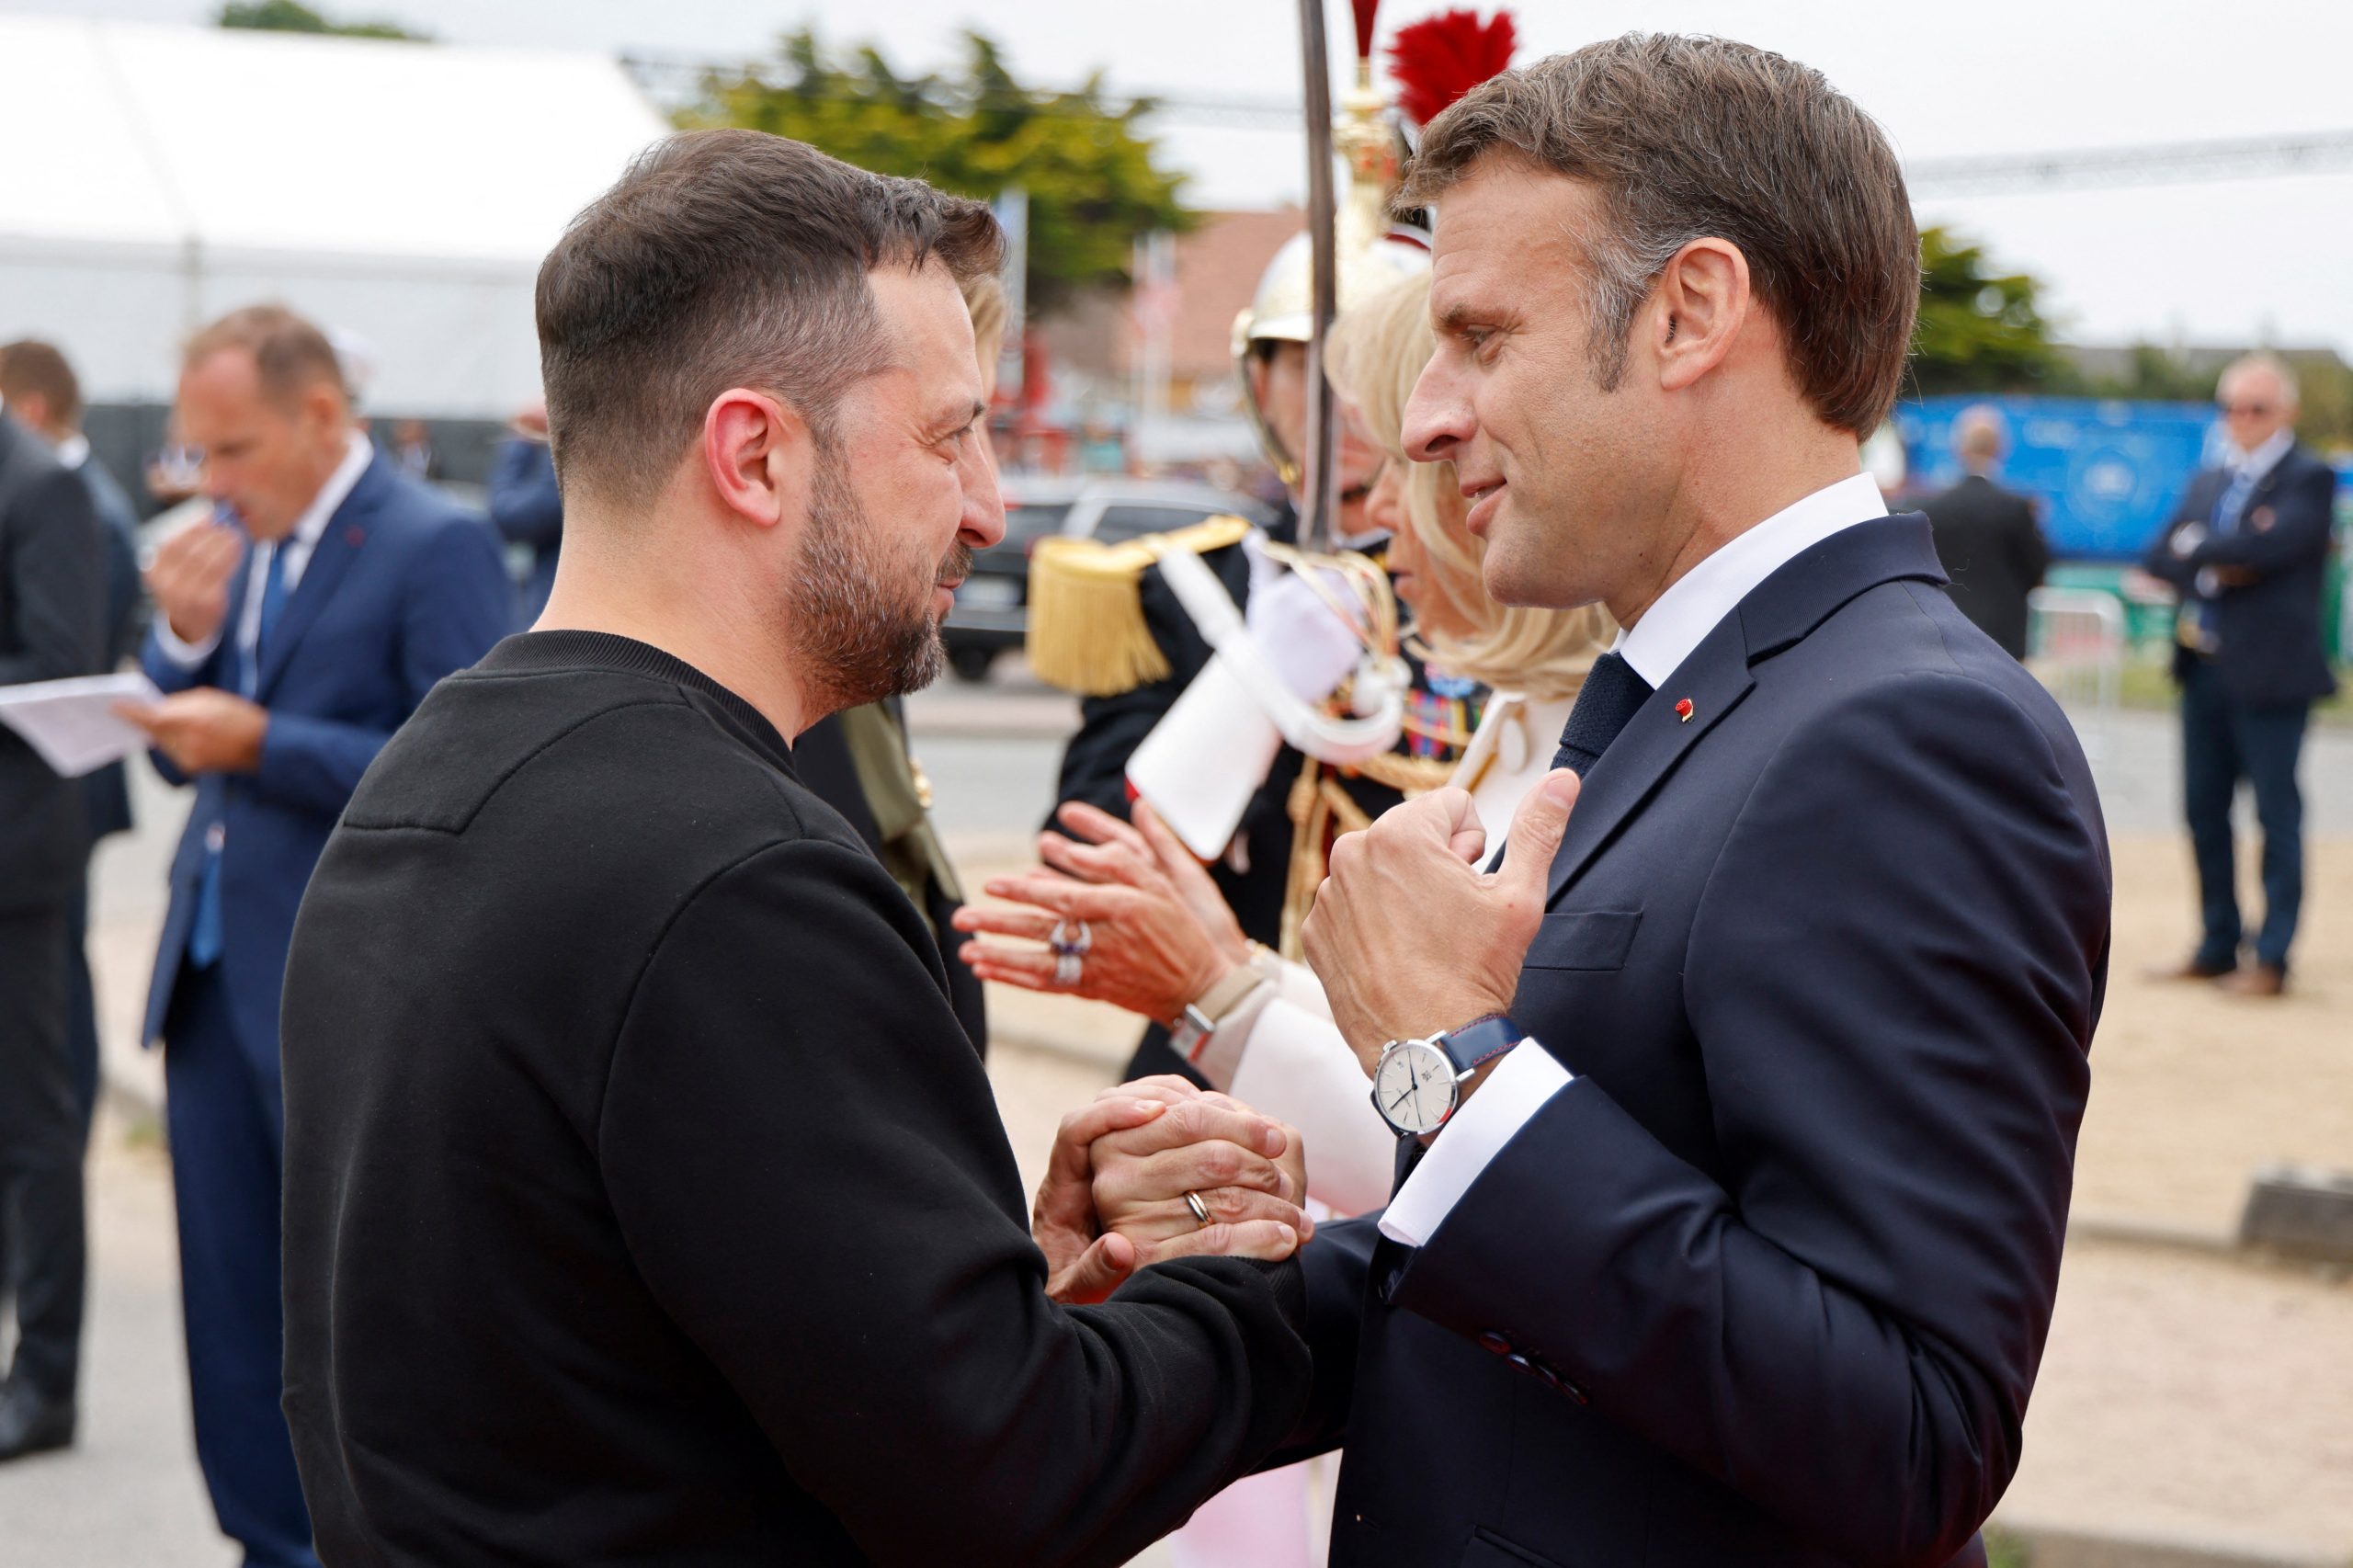 El presidente Macron saluda a Volodymyr Zelensky en la ceremonia conmemorativa internacional